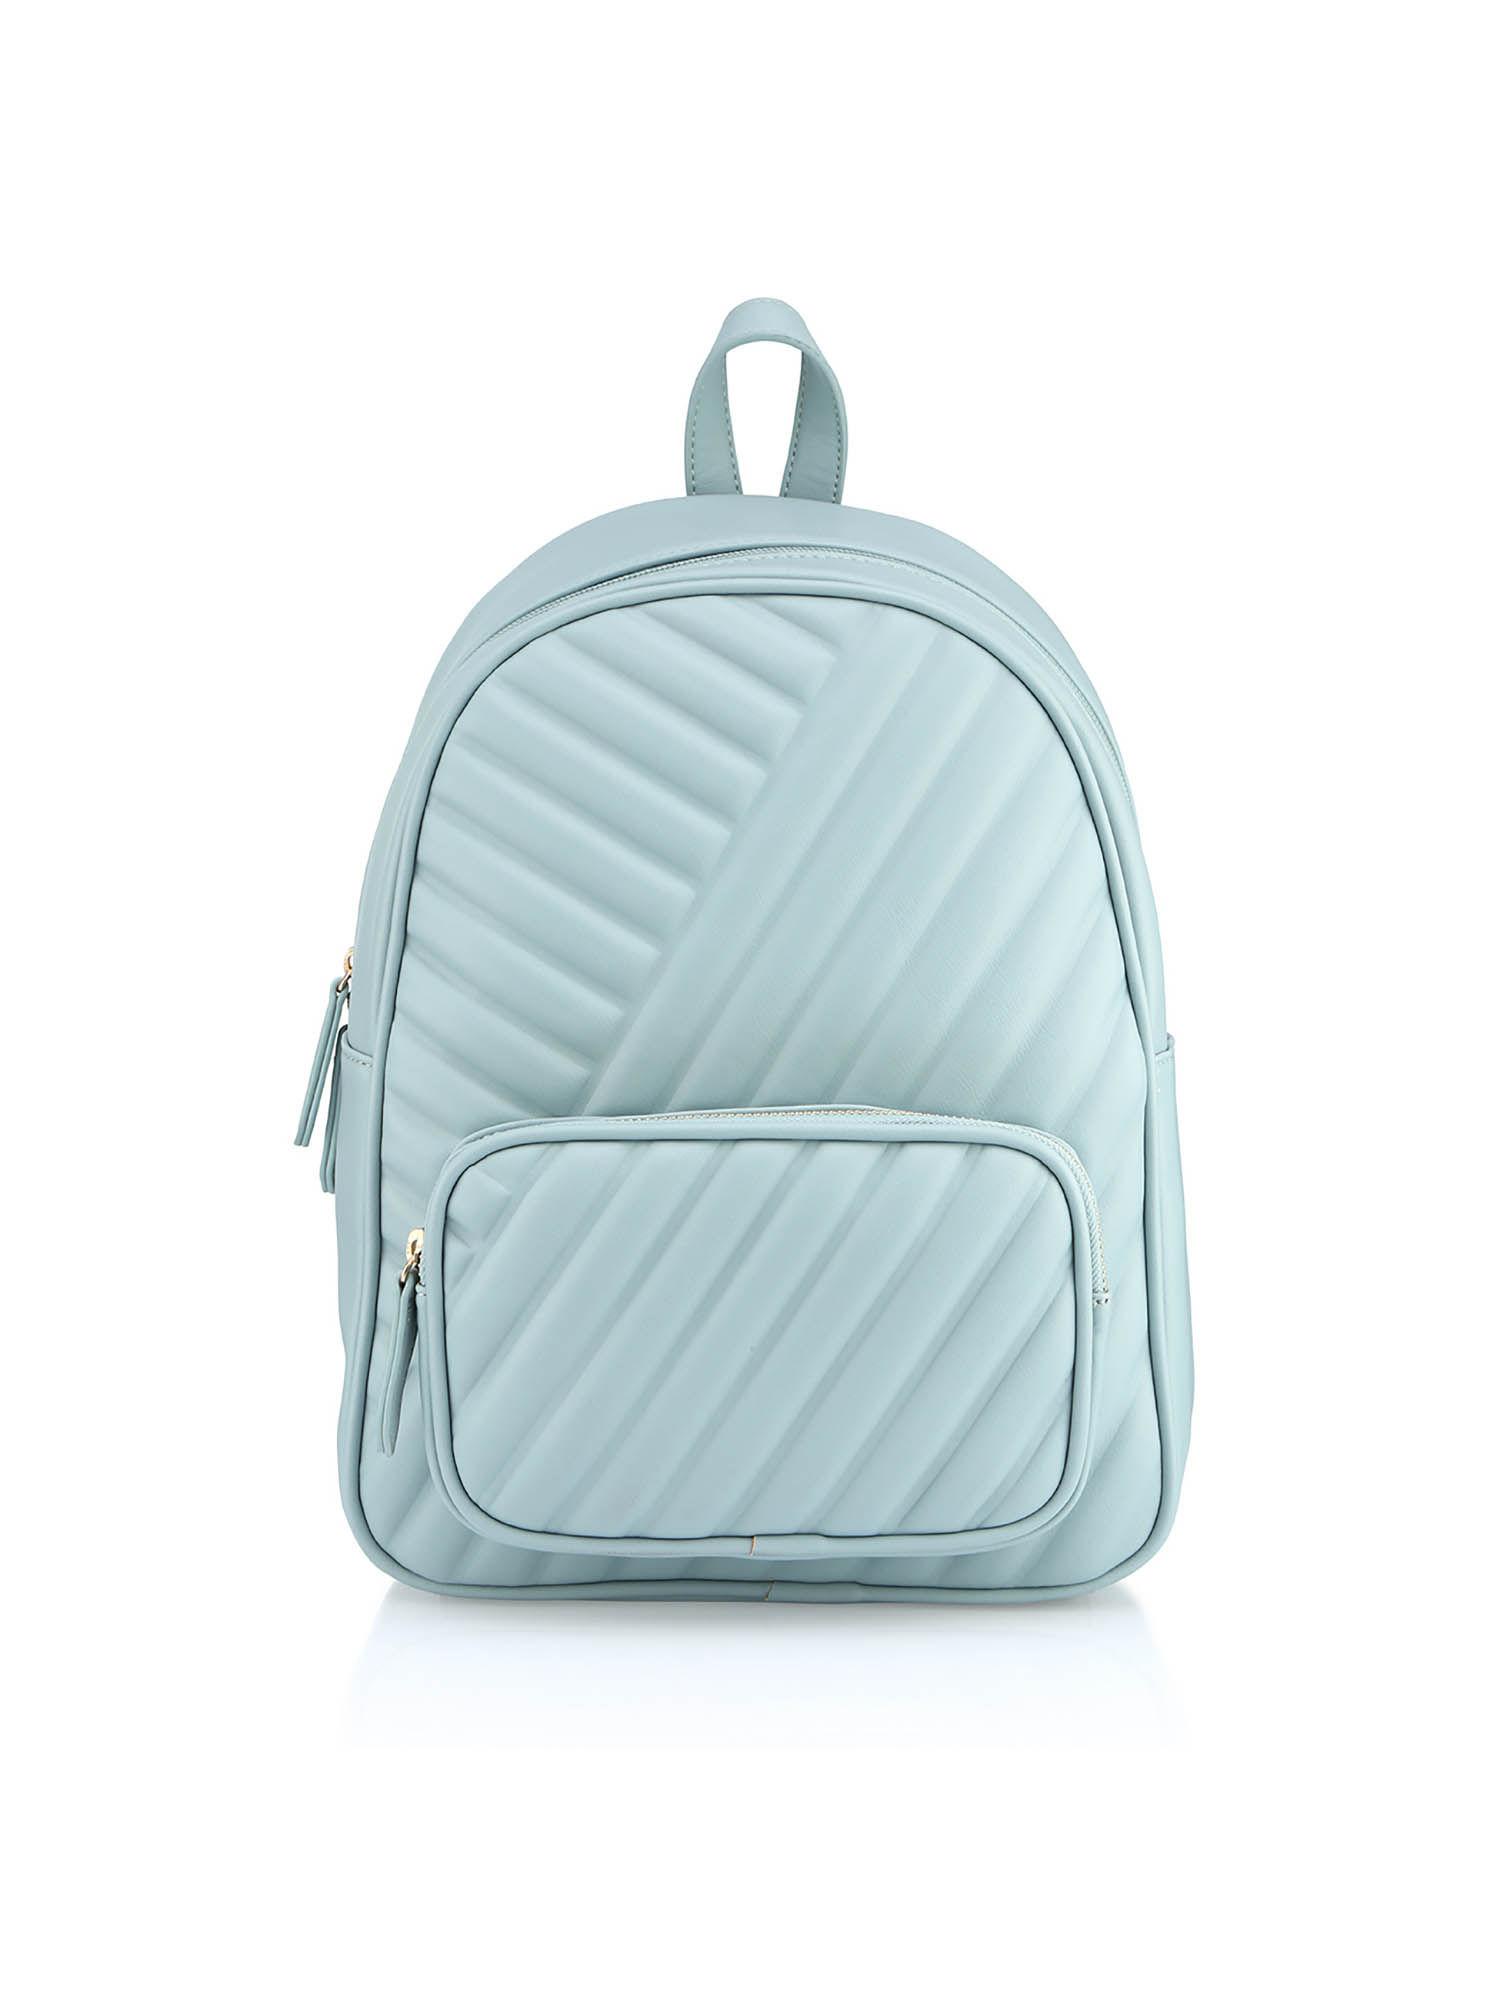 blue patterned backpack